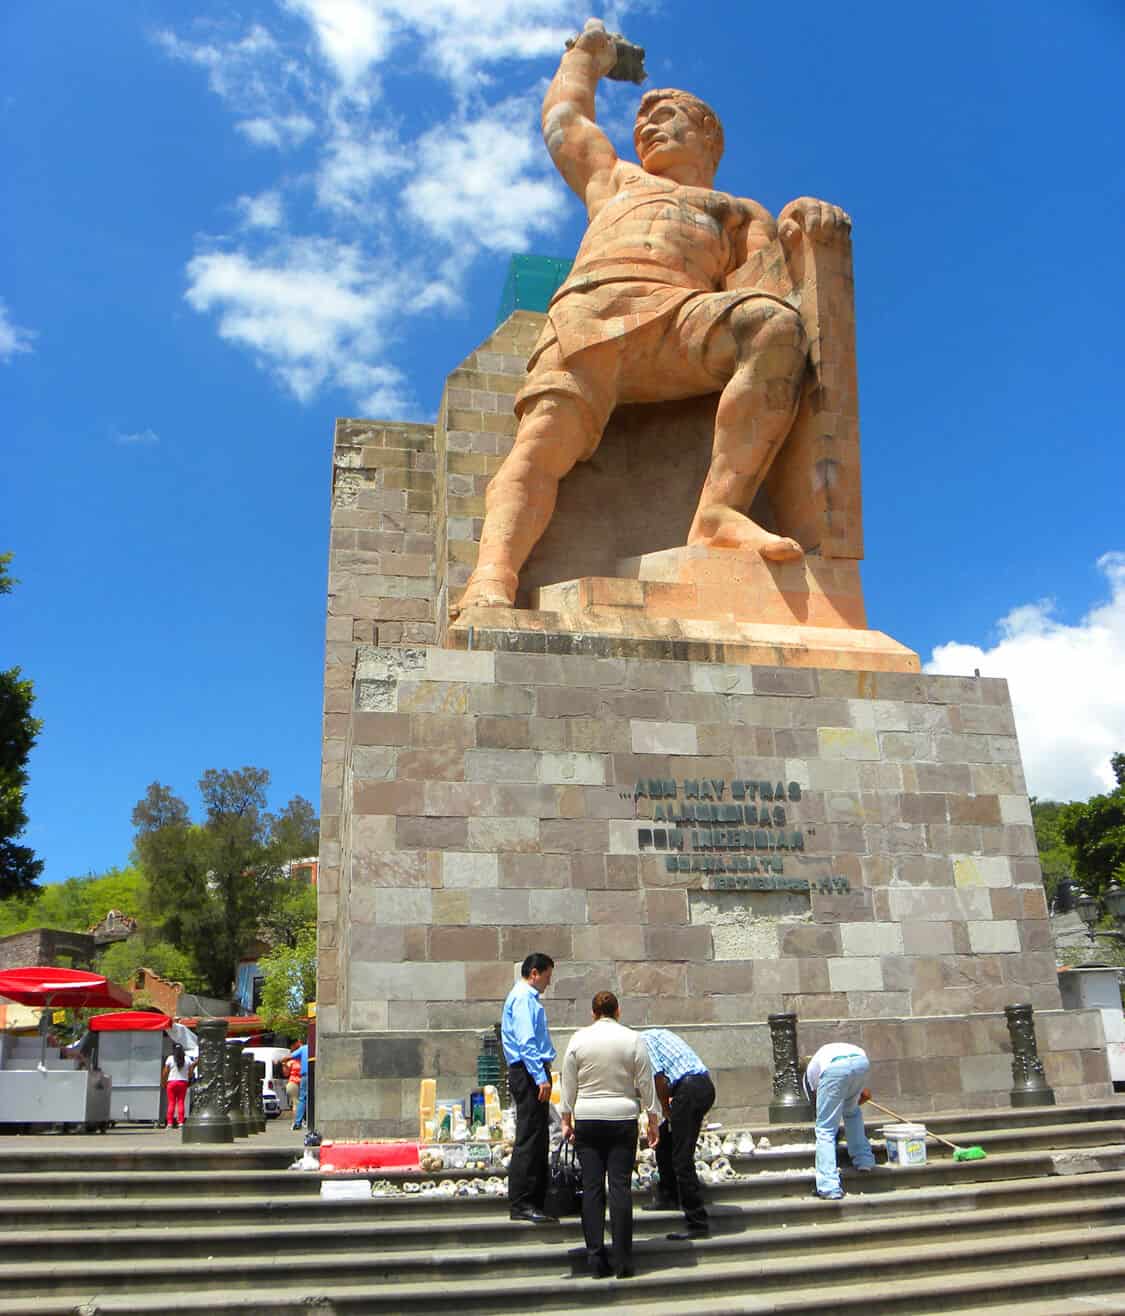 El Pipila statue, Guanajuato